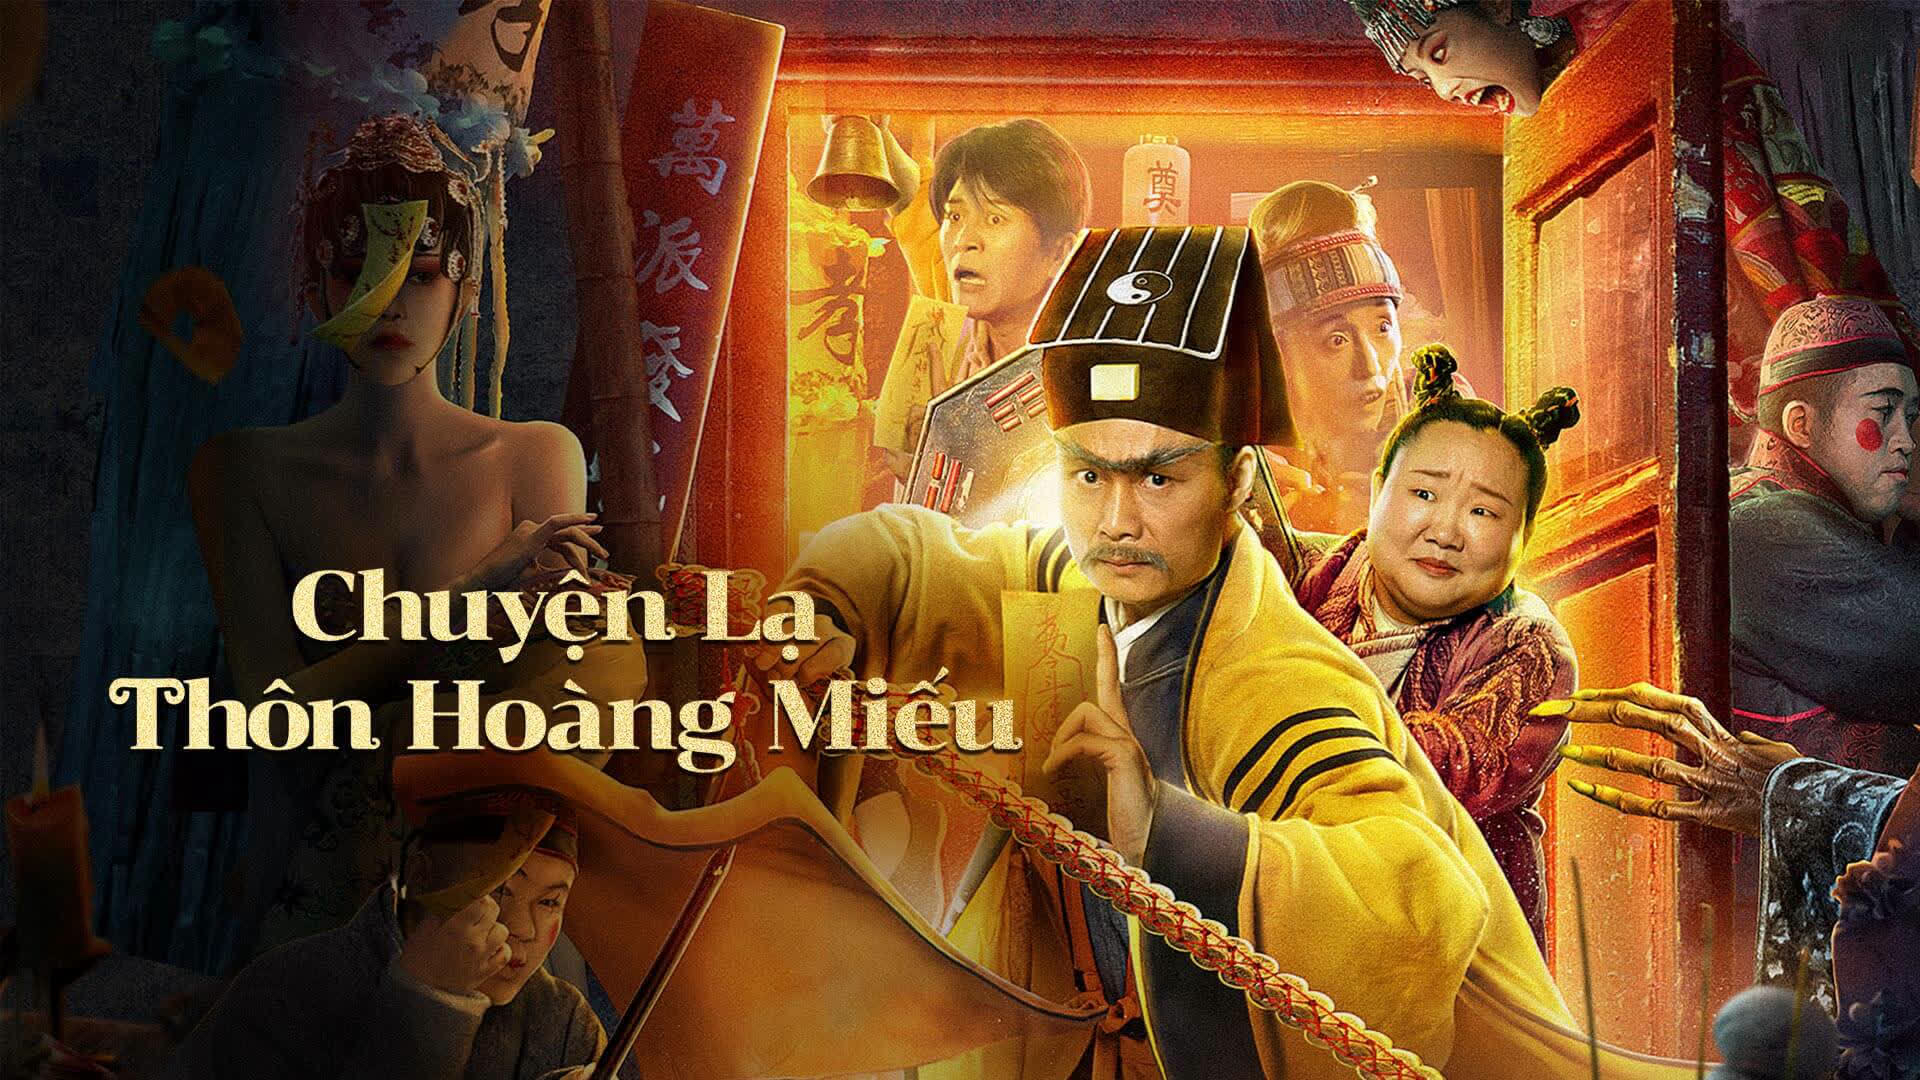 Poster Phim Chuyện Lạ Thôn Hoàng Miếu (Huang Miao Village's Tales Off Mystery)